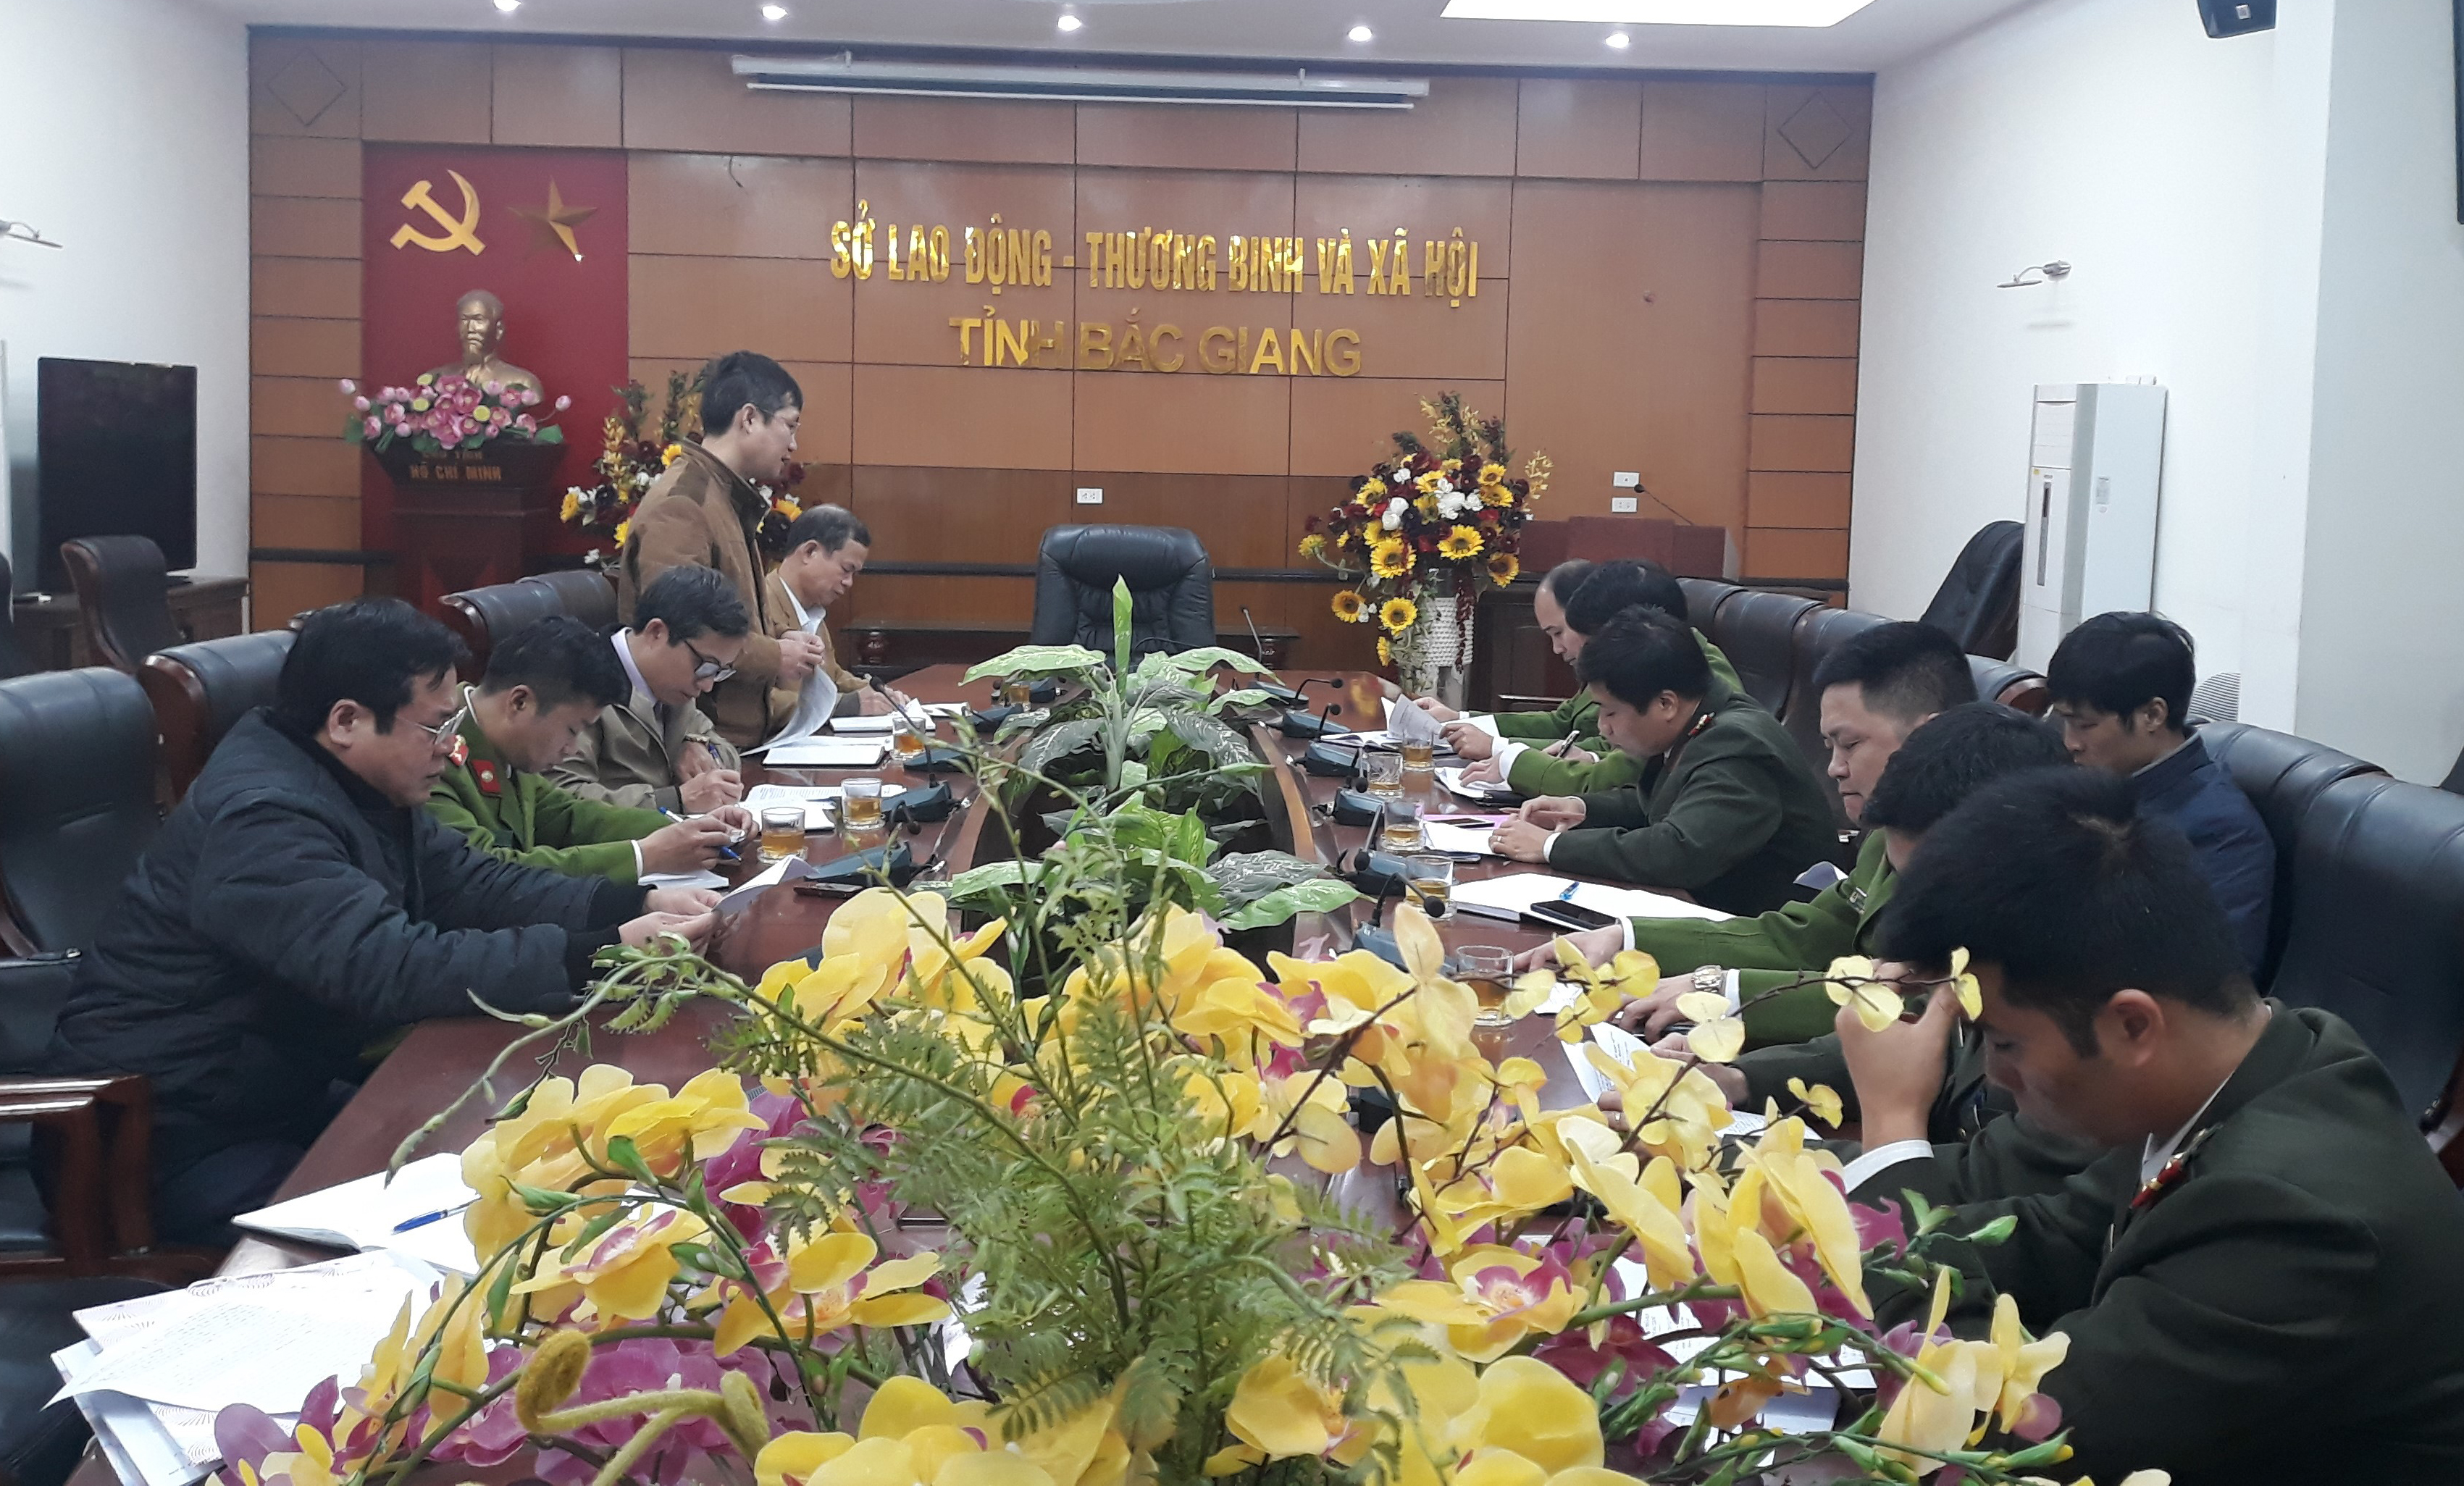 Nâng cao hiệu quả hoạt động Đội kiểm tra liên ngành 178 tỉnh Bắc Giang